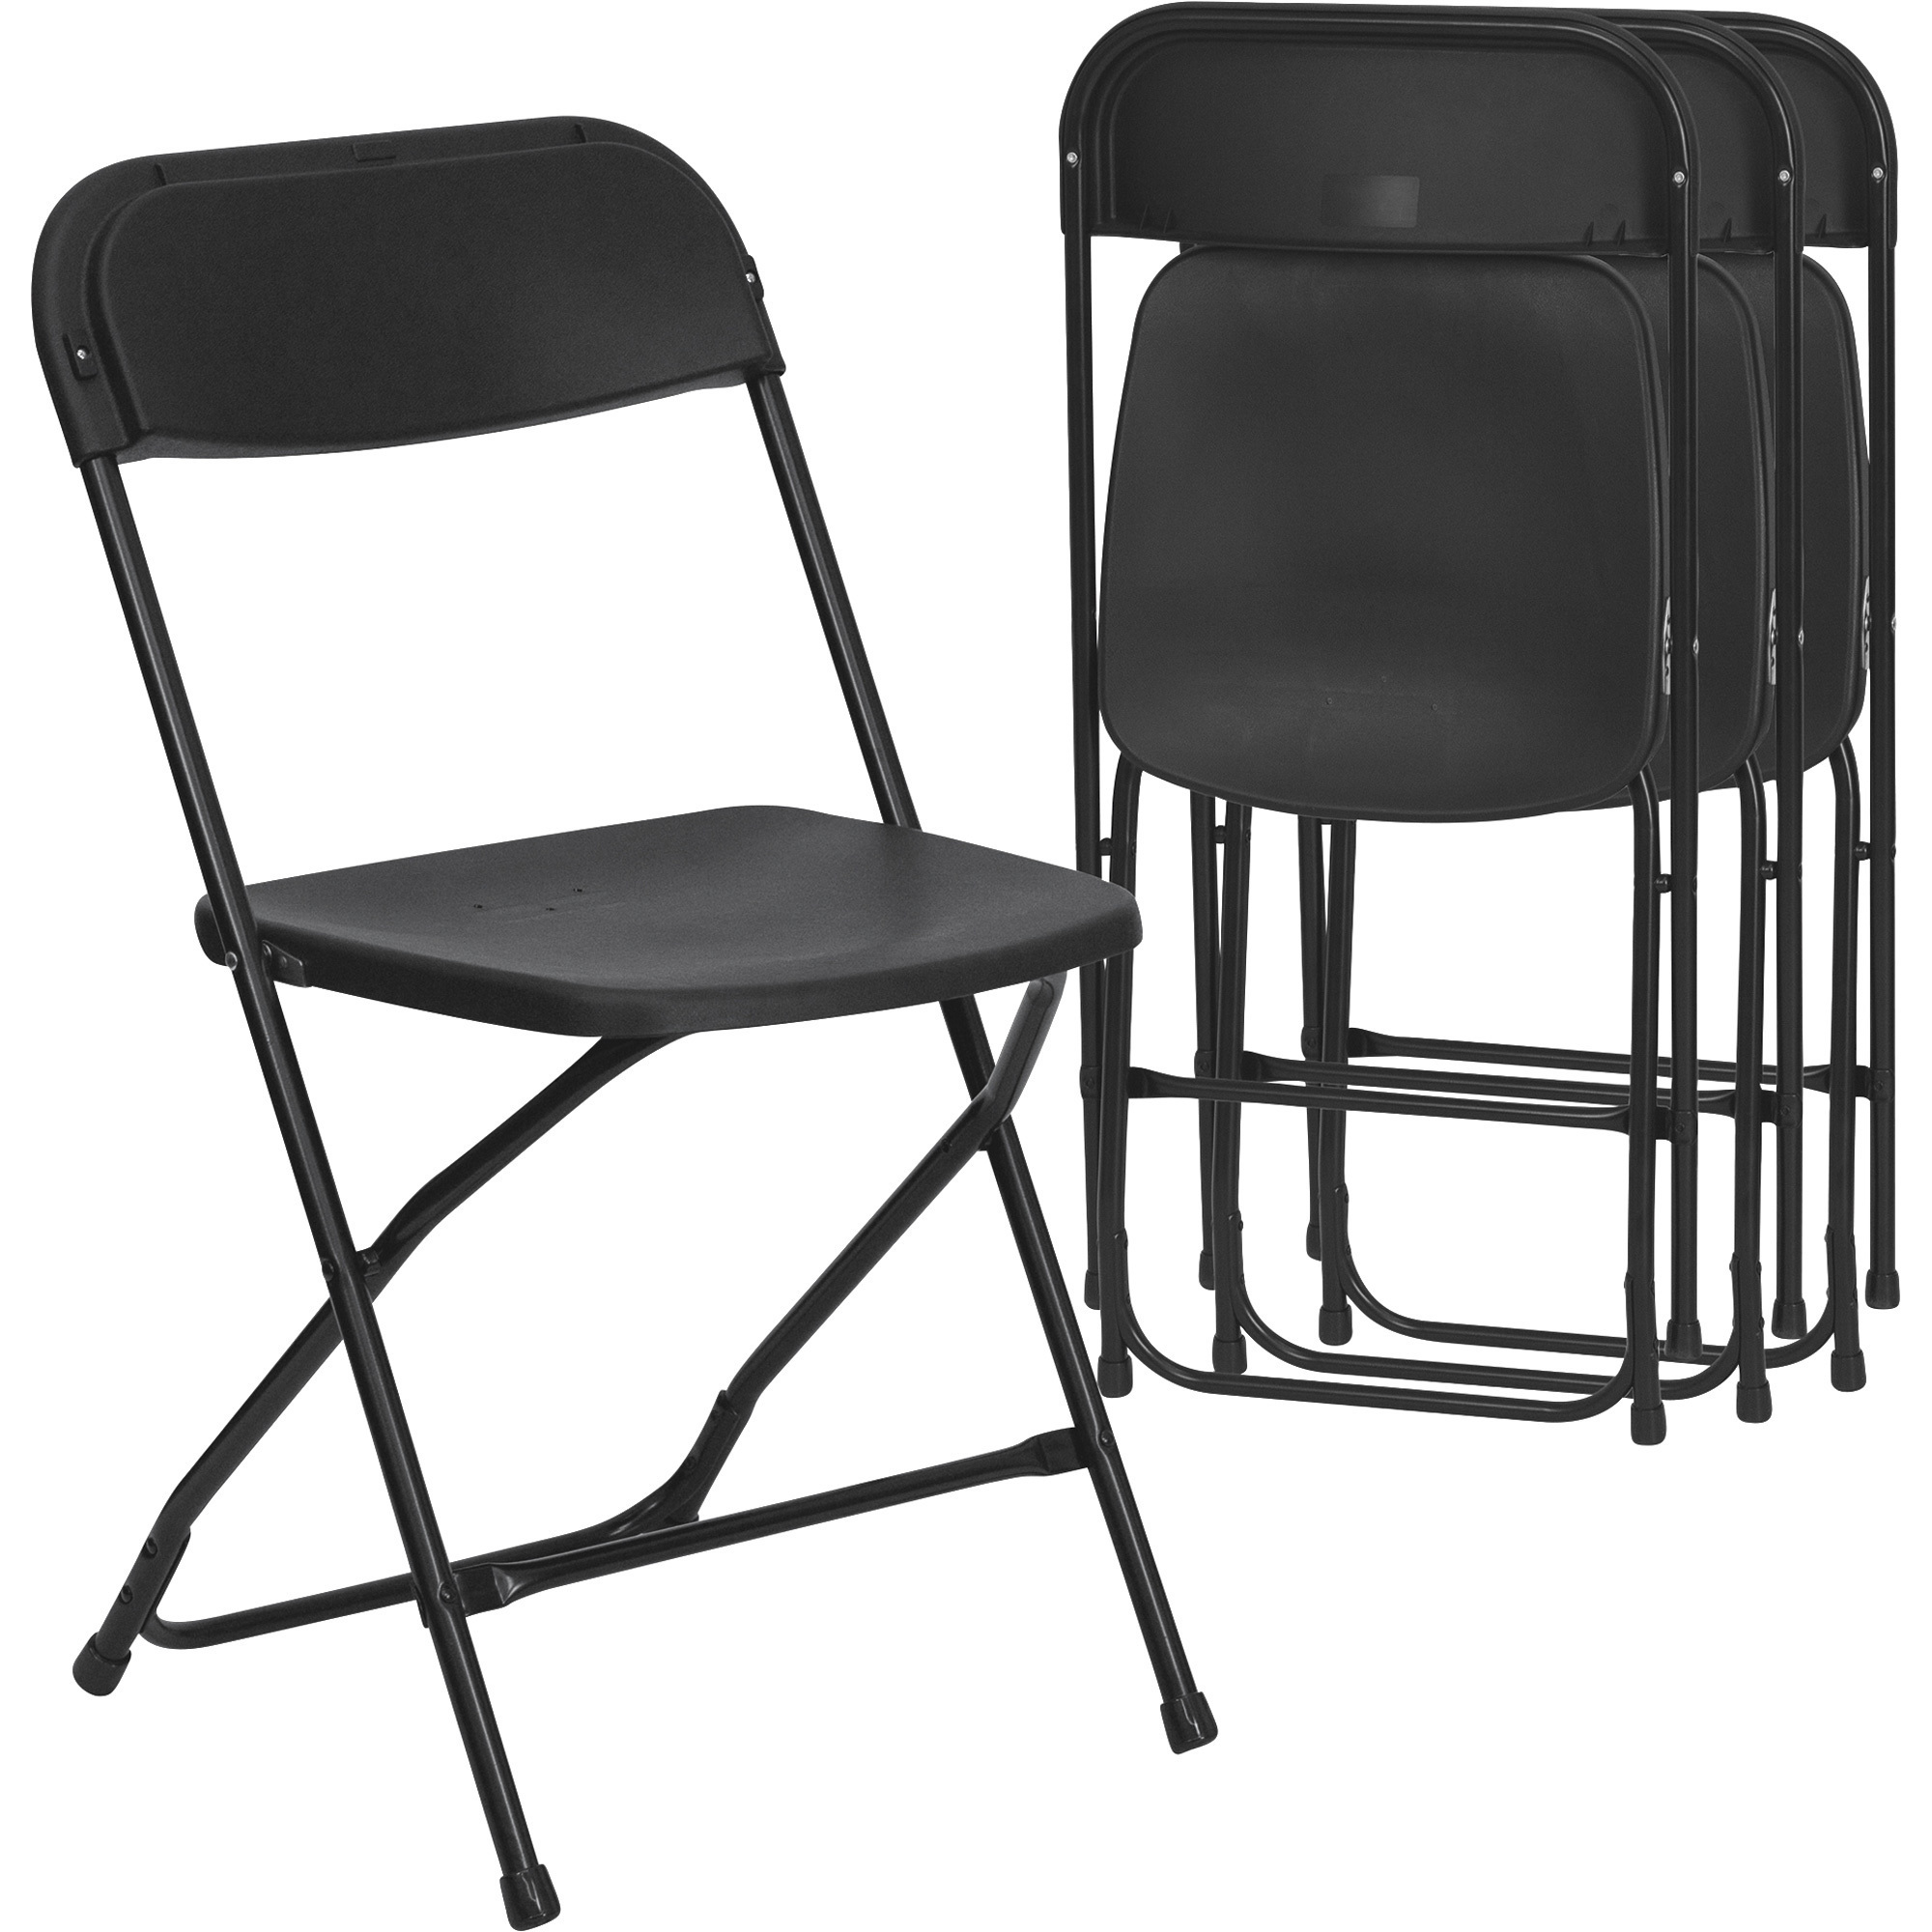 Plastic Folding Chair — Black, 17 1/2Inch W x 18Inch D x 31 1/2Inch H, Model - Flash Furniture LEL3BLACK